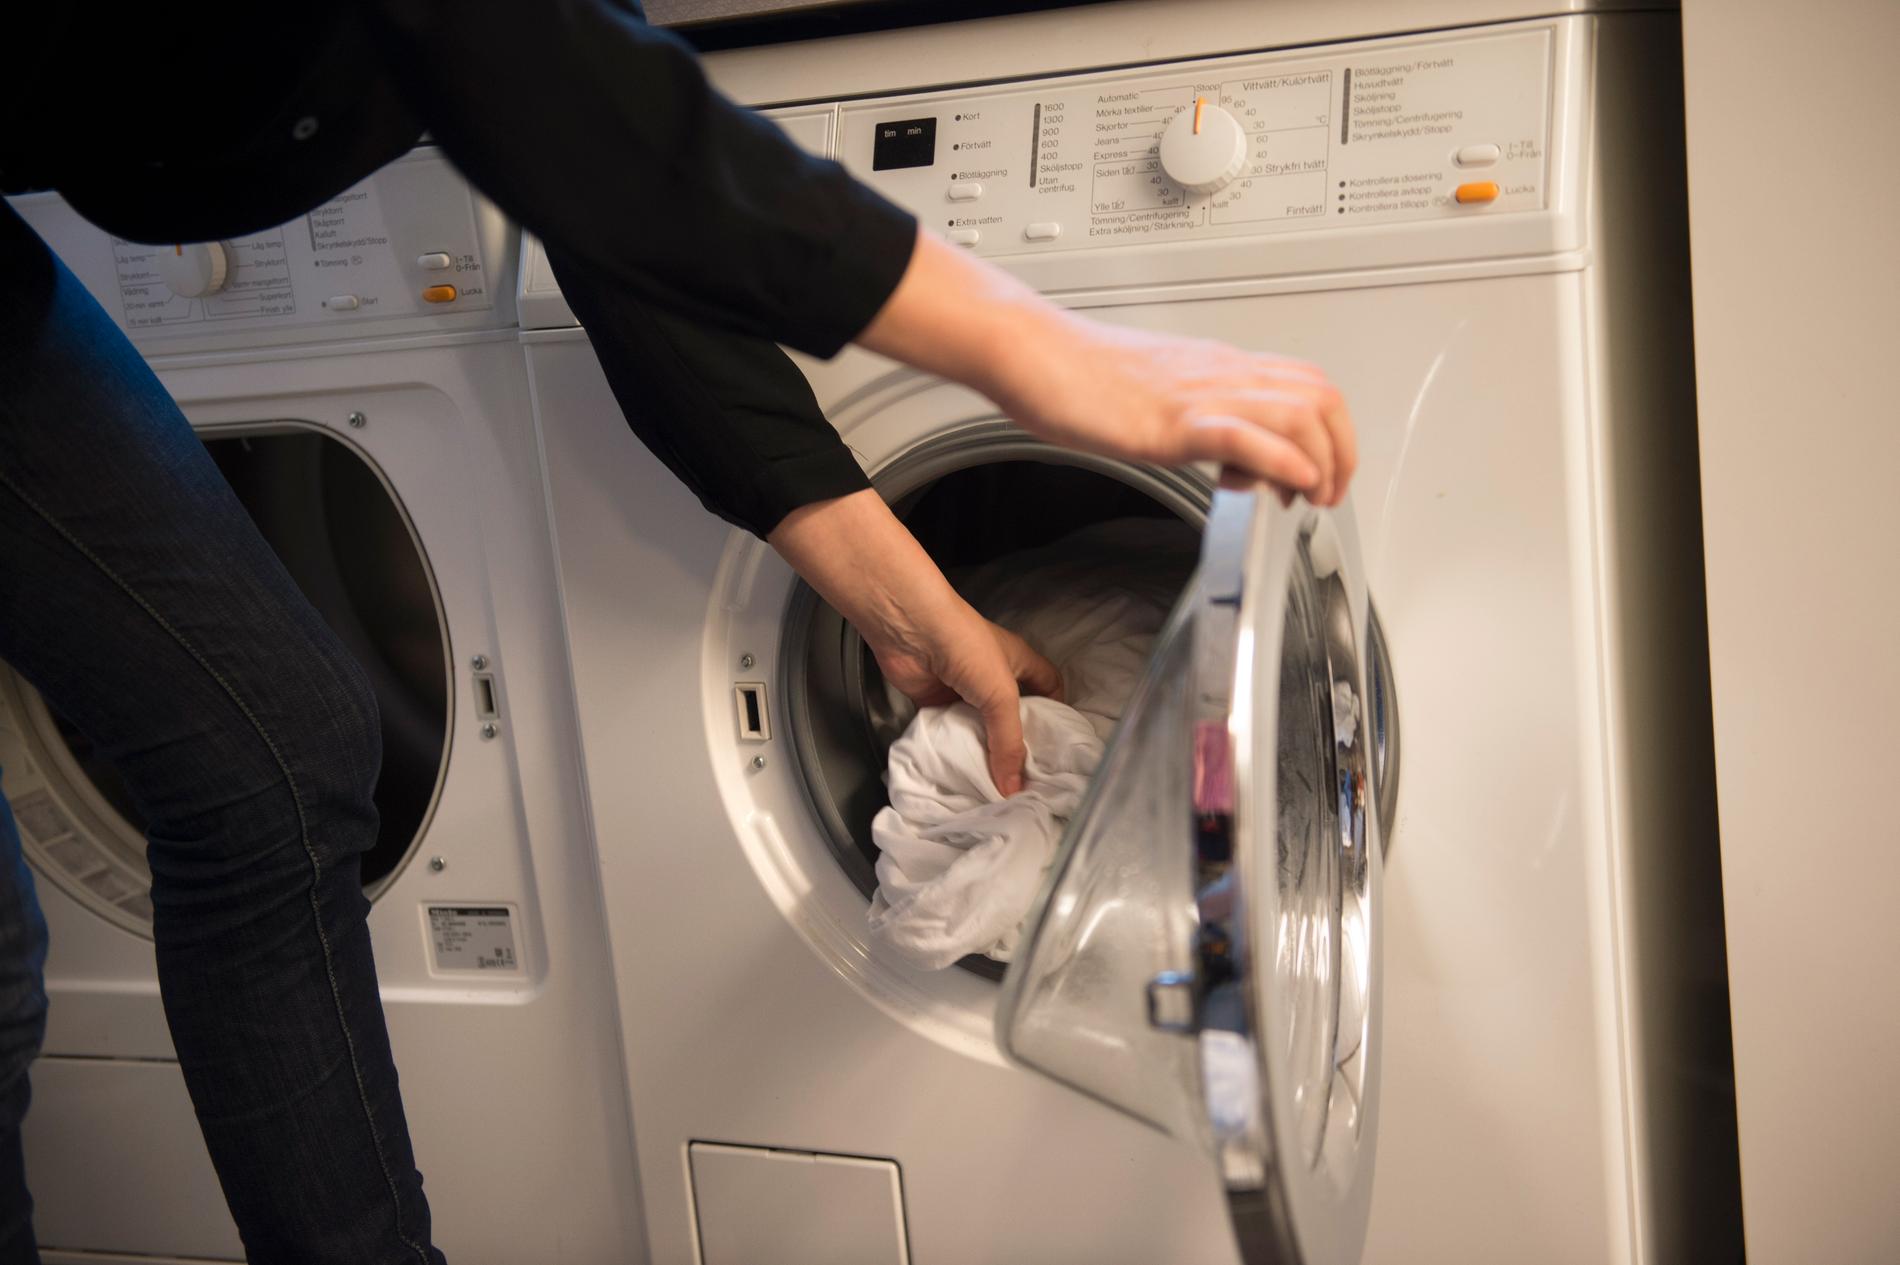 Svenskt vatten avråder från att stoppa silverbehandlade träningskläder i tvättmaskinen. De bör tvättas för hand och sedan bör tvättvattnet behandlas som miljöfarligt avfall, är rådet. Arkivbild.